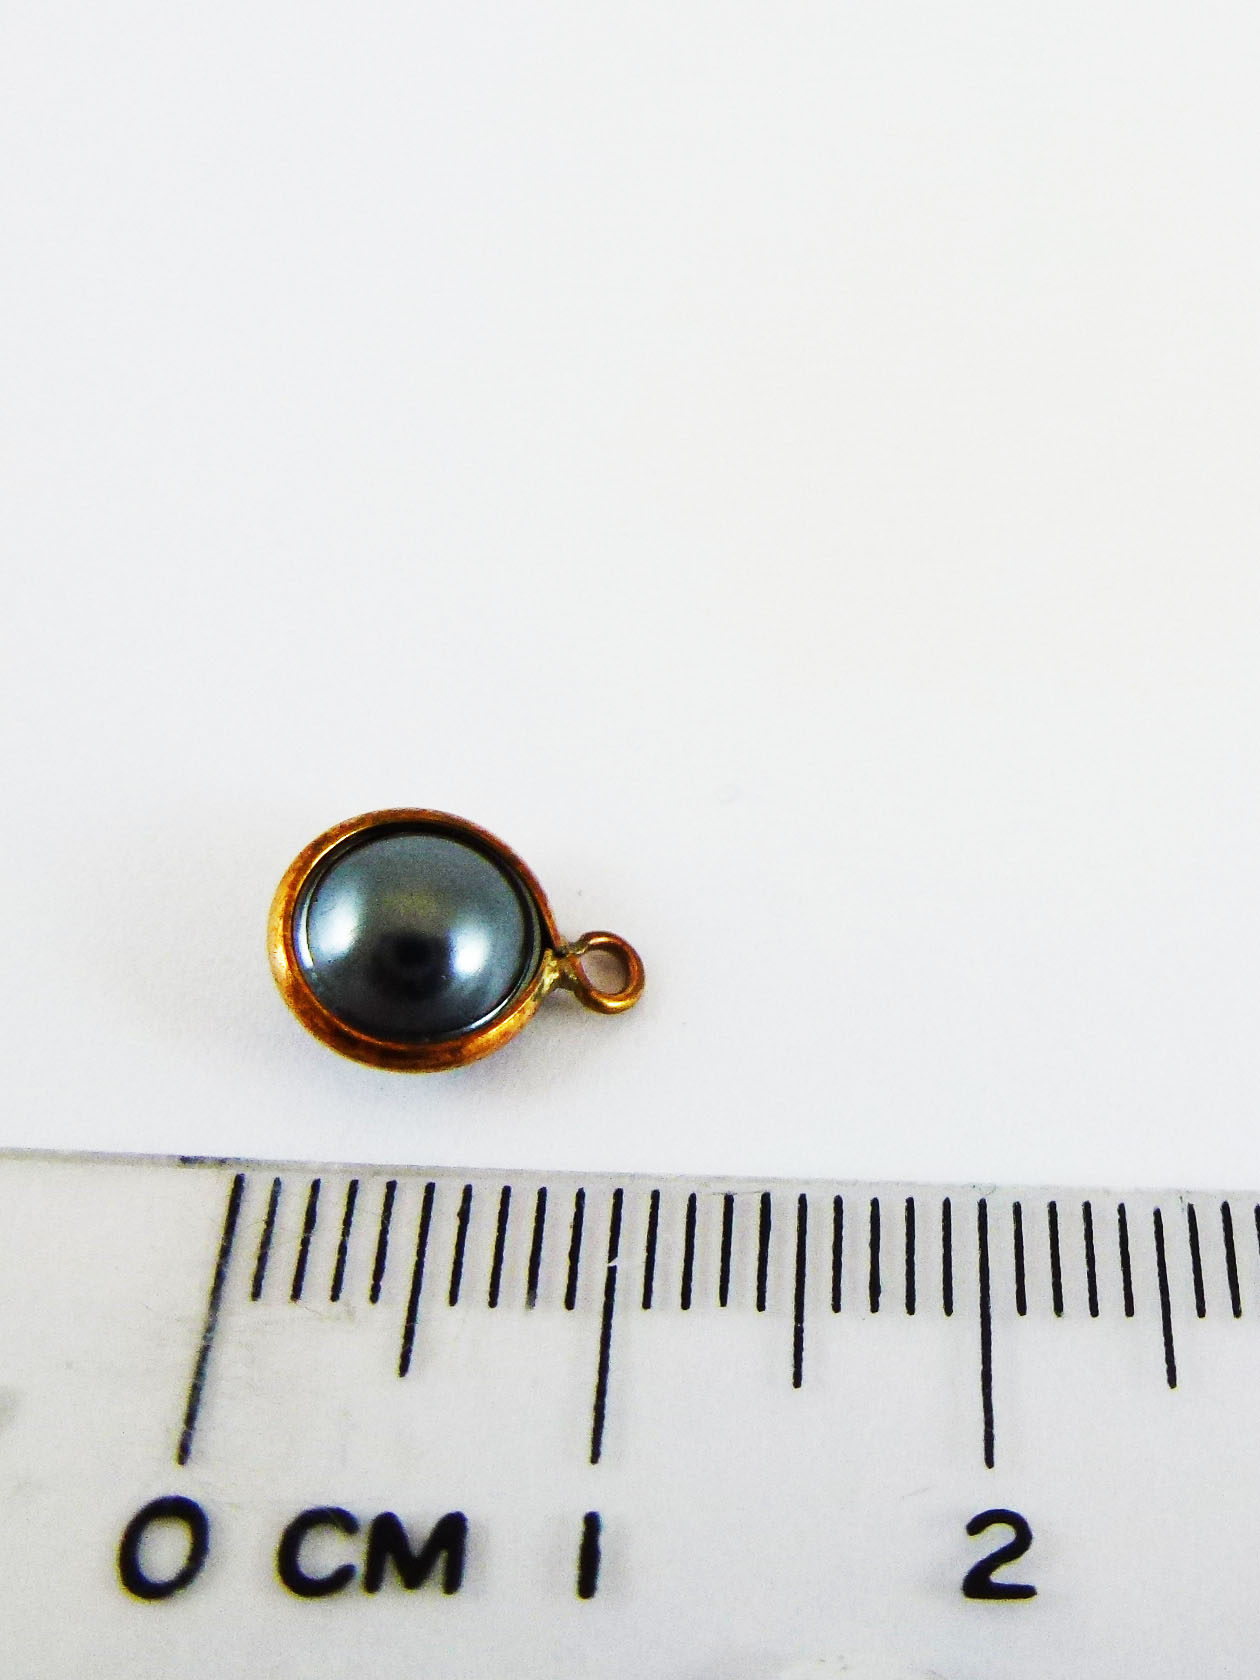 8mm銅鍍玫瑰金單孔圓扁珠-黑色